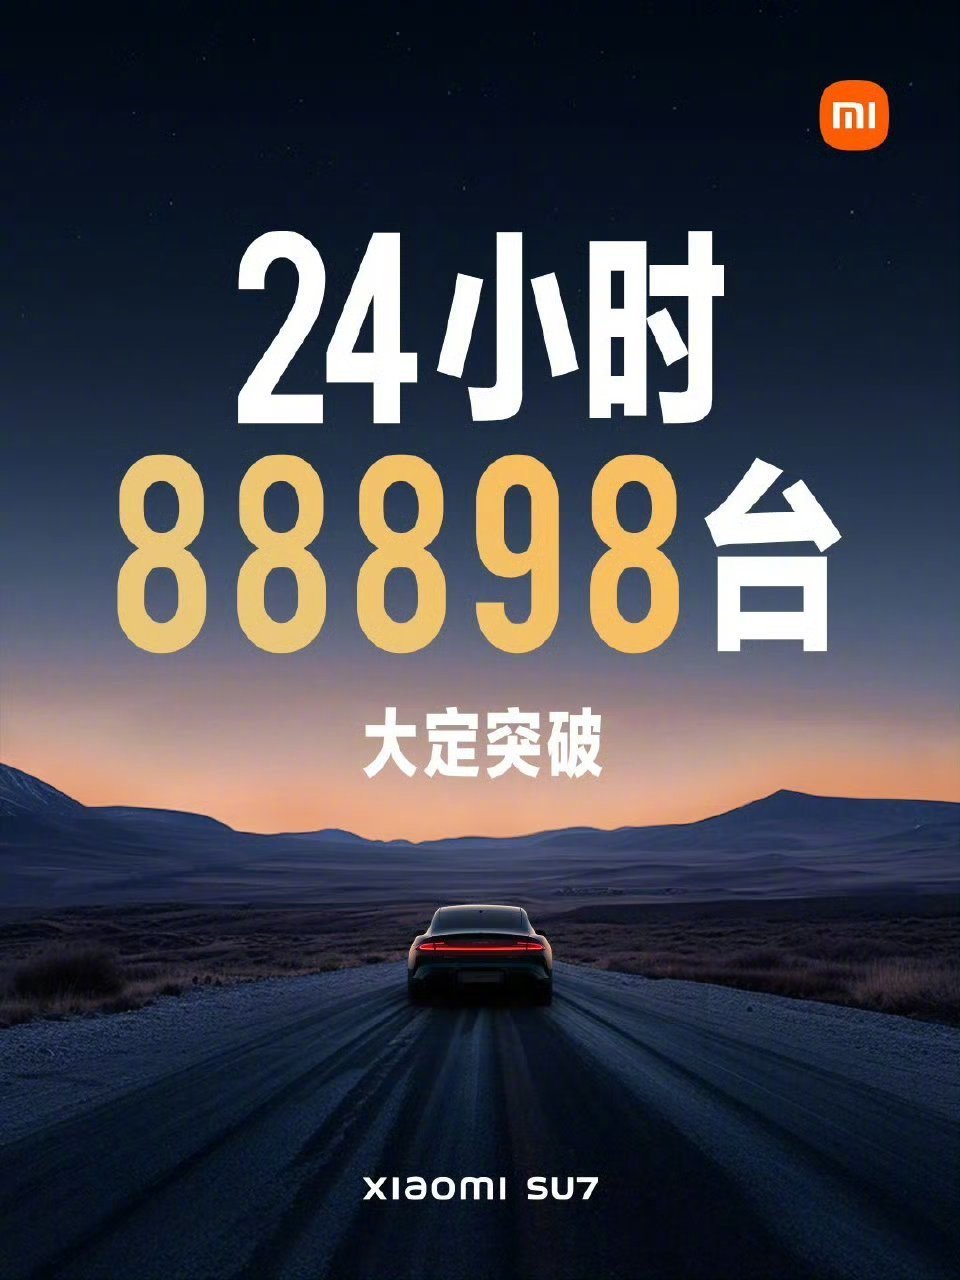 【爱车基地】热门小米汽车24小时，88898台绝无仅有的记录-第0张